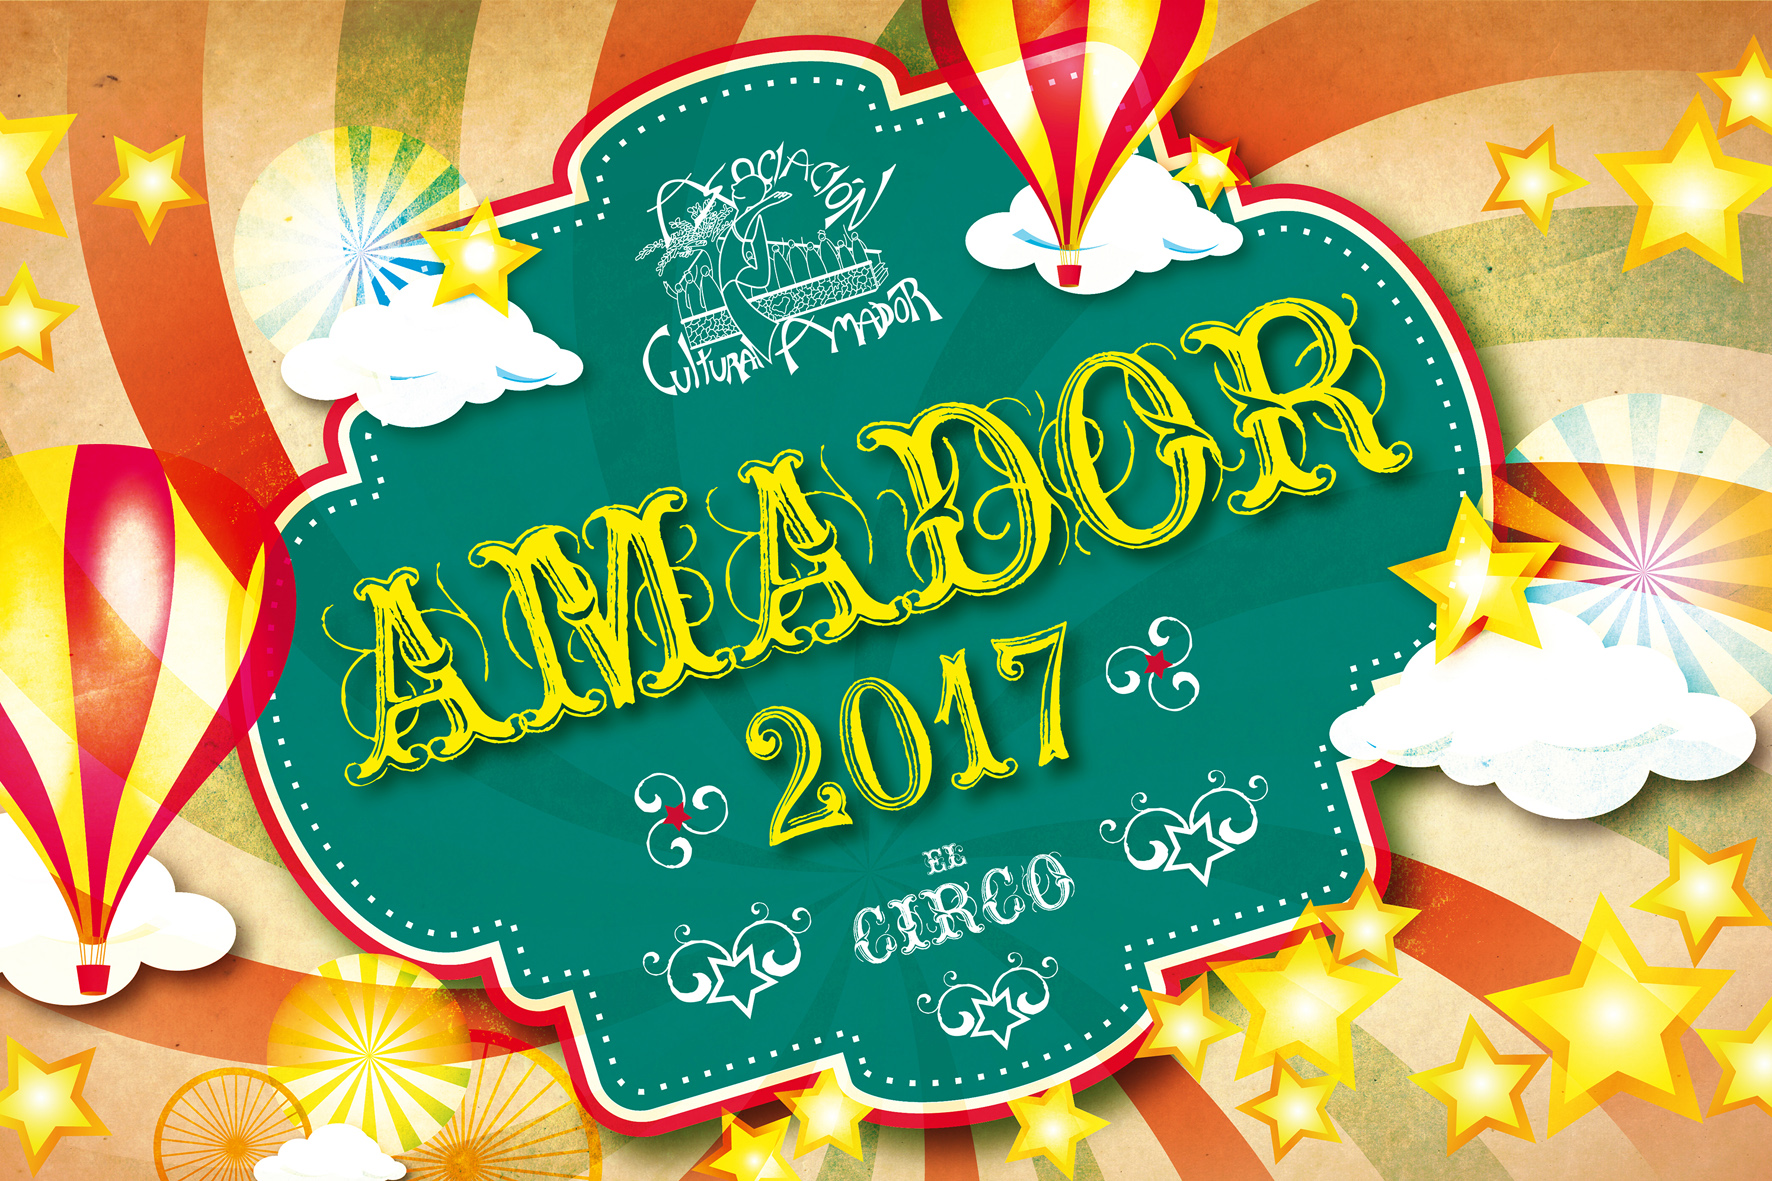 Amador entregarán los Premios Amador 2017 este miércoles